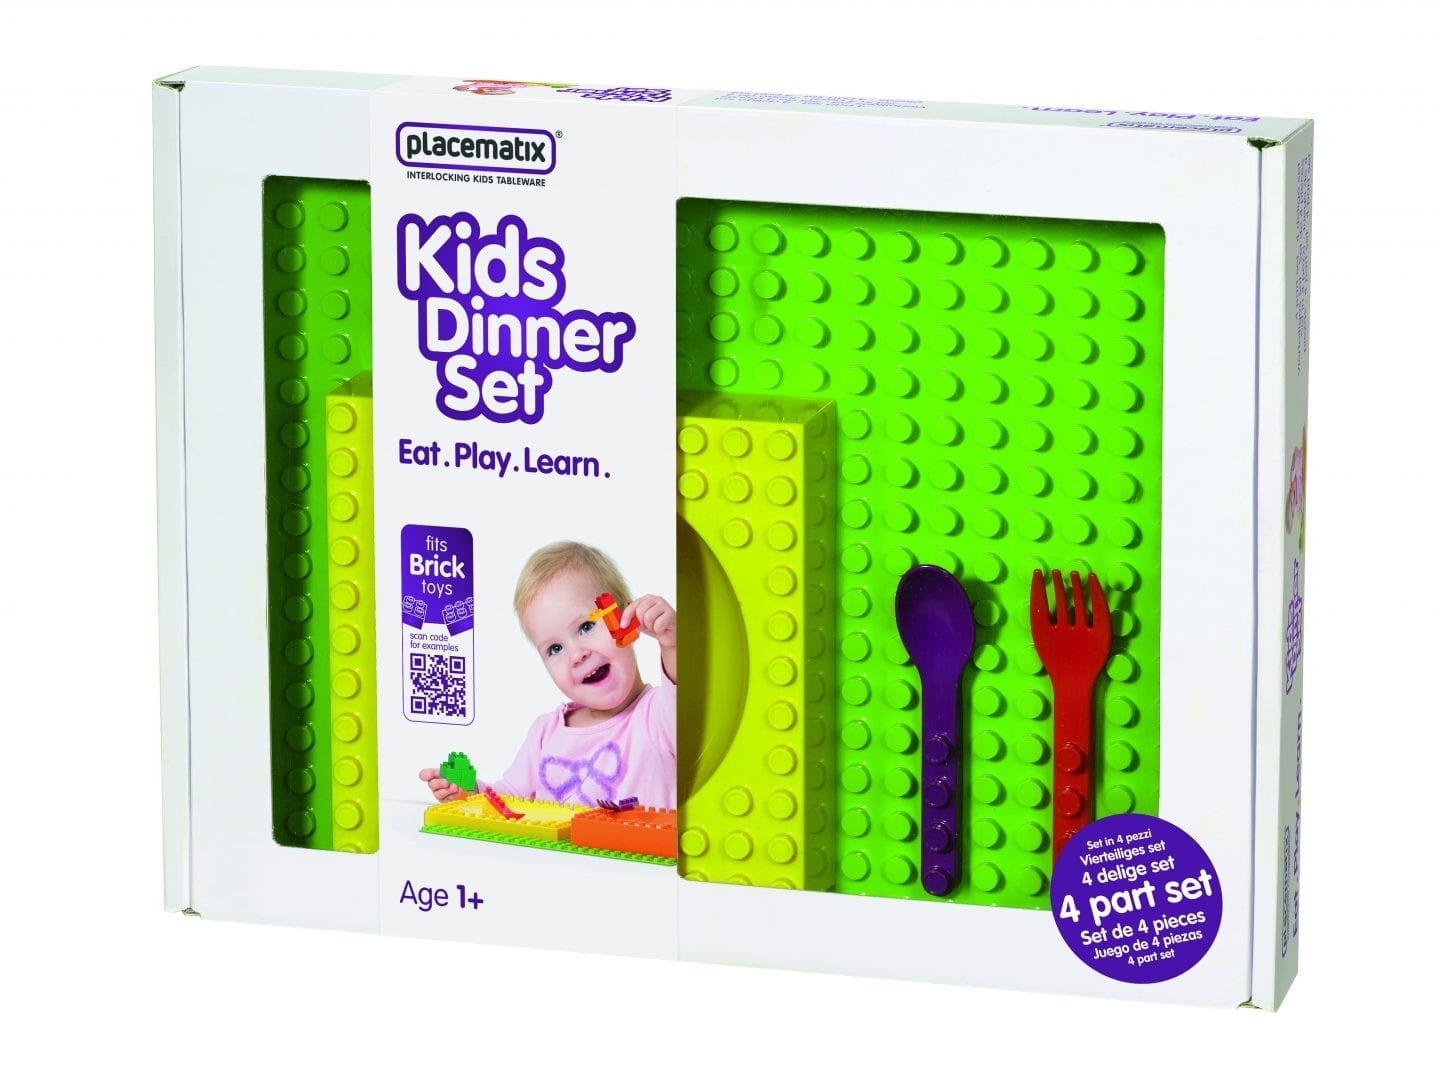 childrens lego like dinner set